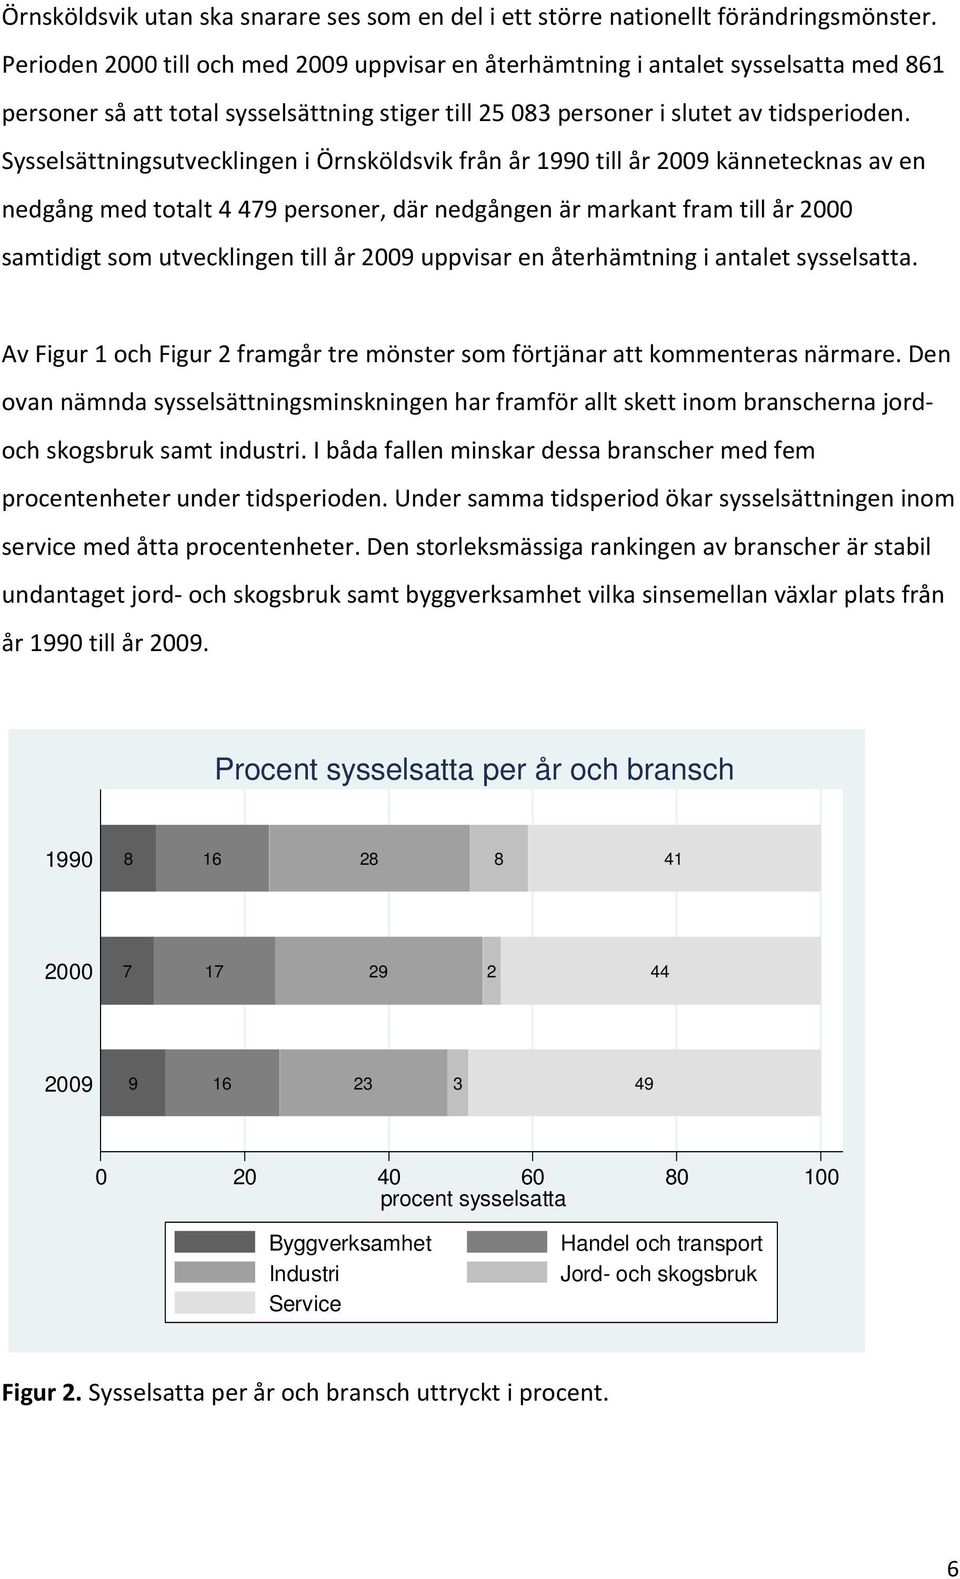 Sysselsättningsutvecklingen i Örnsköldsvik från år 1990 till år 2009 kännetecknas av en nedgång med totalt 4479 personer, där nedgången är markant fram till år 2000 samtidigt som utvecklingen till år